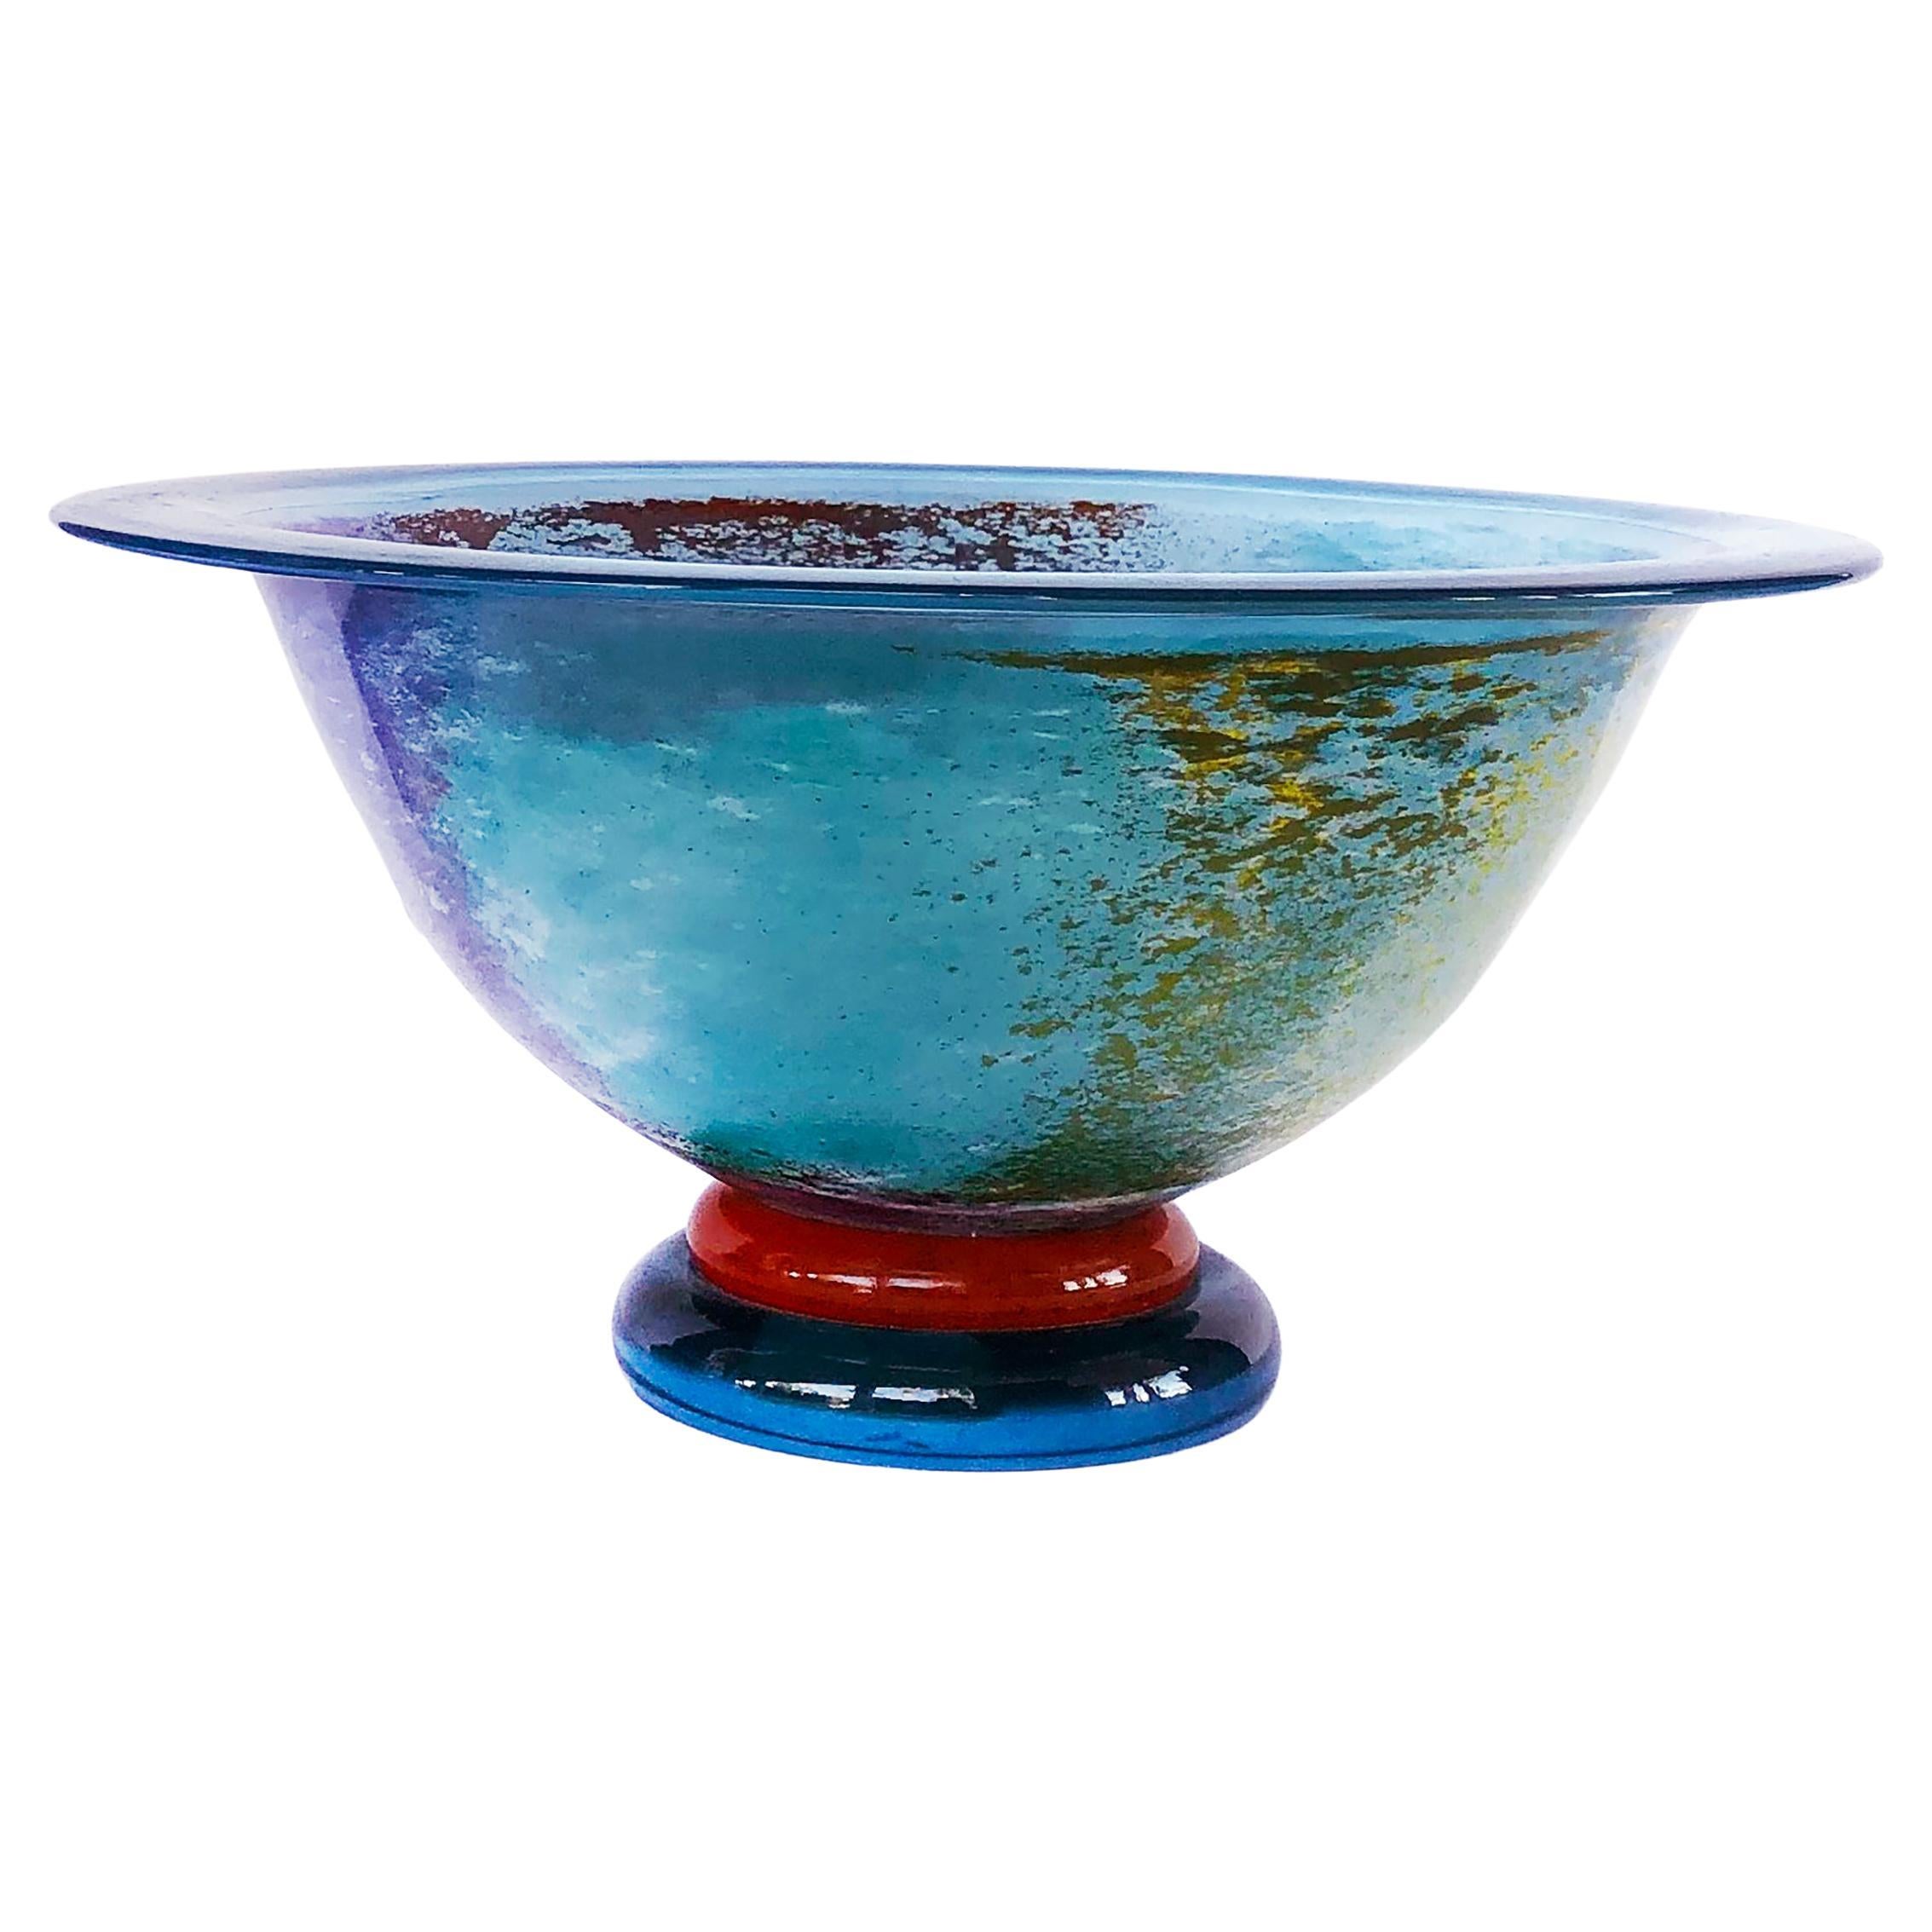 Vintage Kosta Boda Art Glass Bowl by Kjell Engman